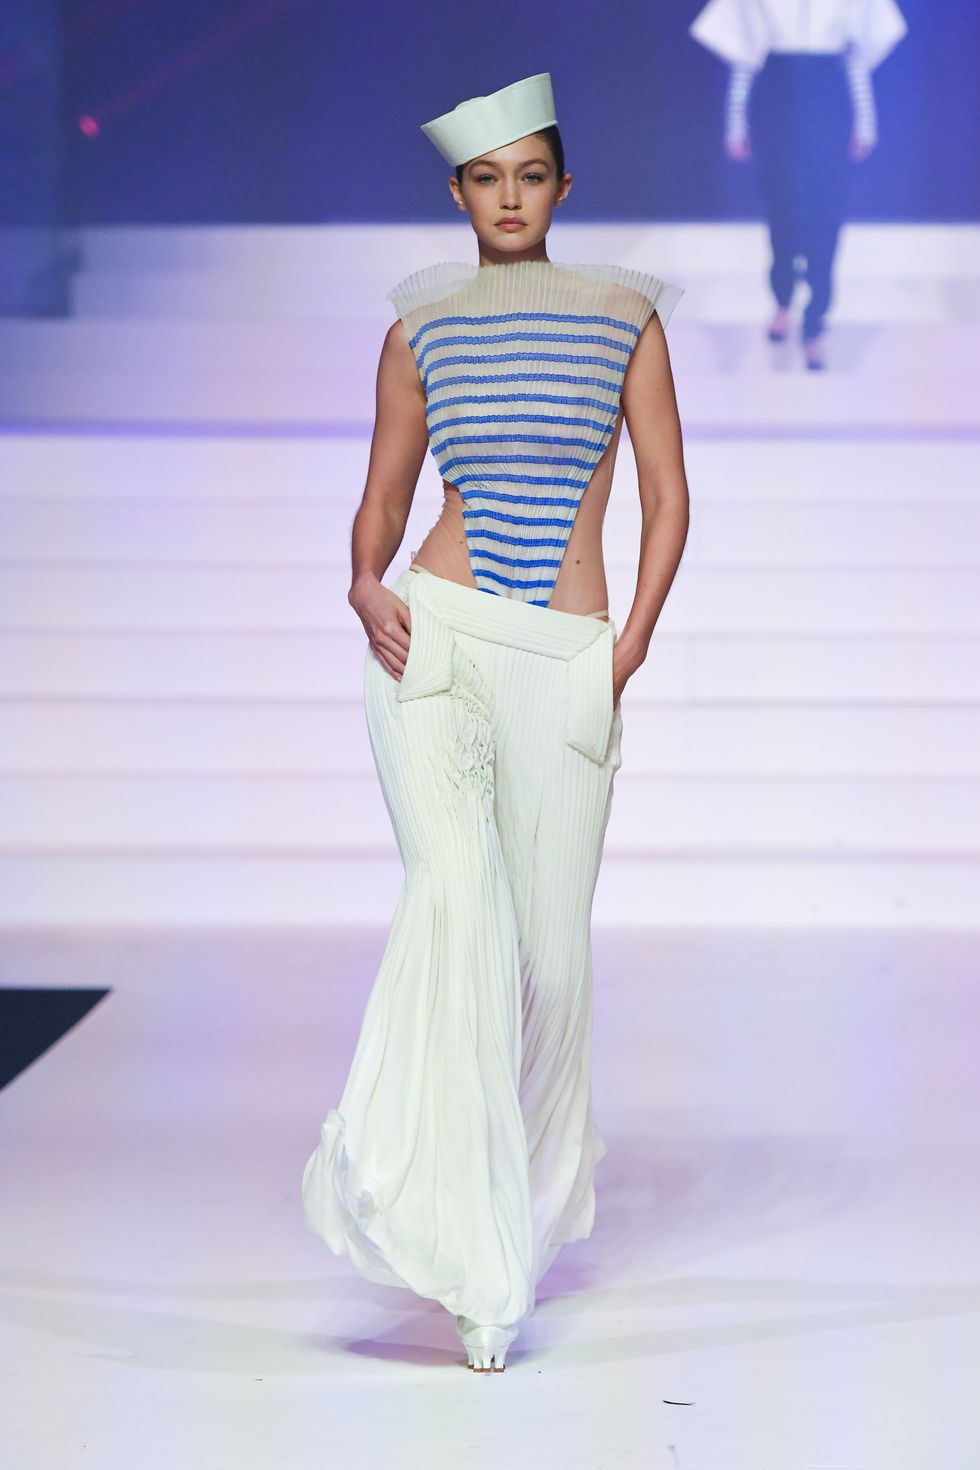 gigi hadid walks the runway during the jean paul gaultier news photo 1594043337 Haute Couture. 10 najlepszych pokazów światowej mody